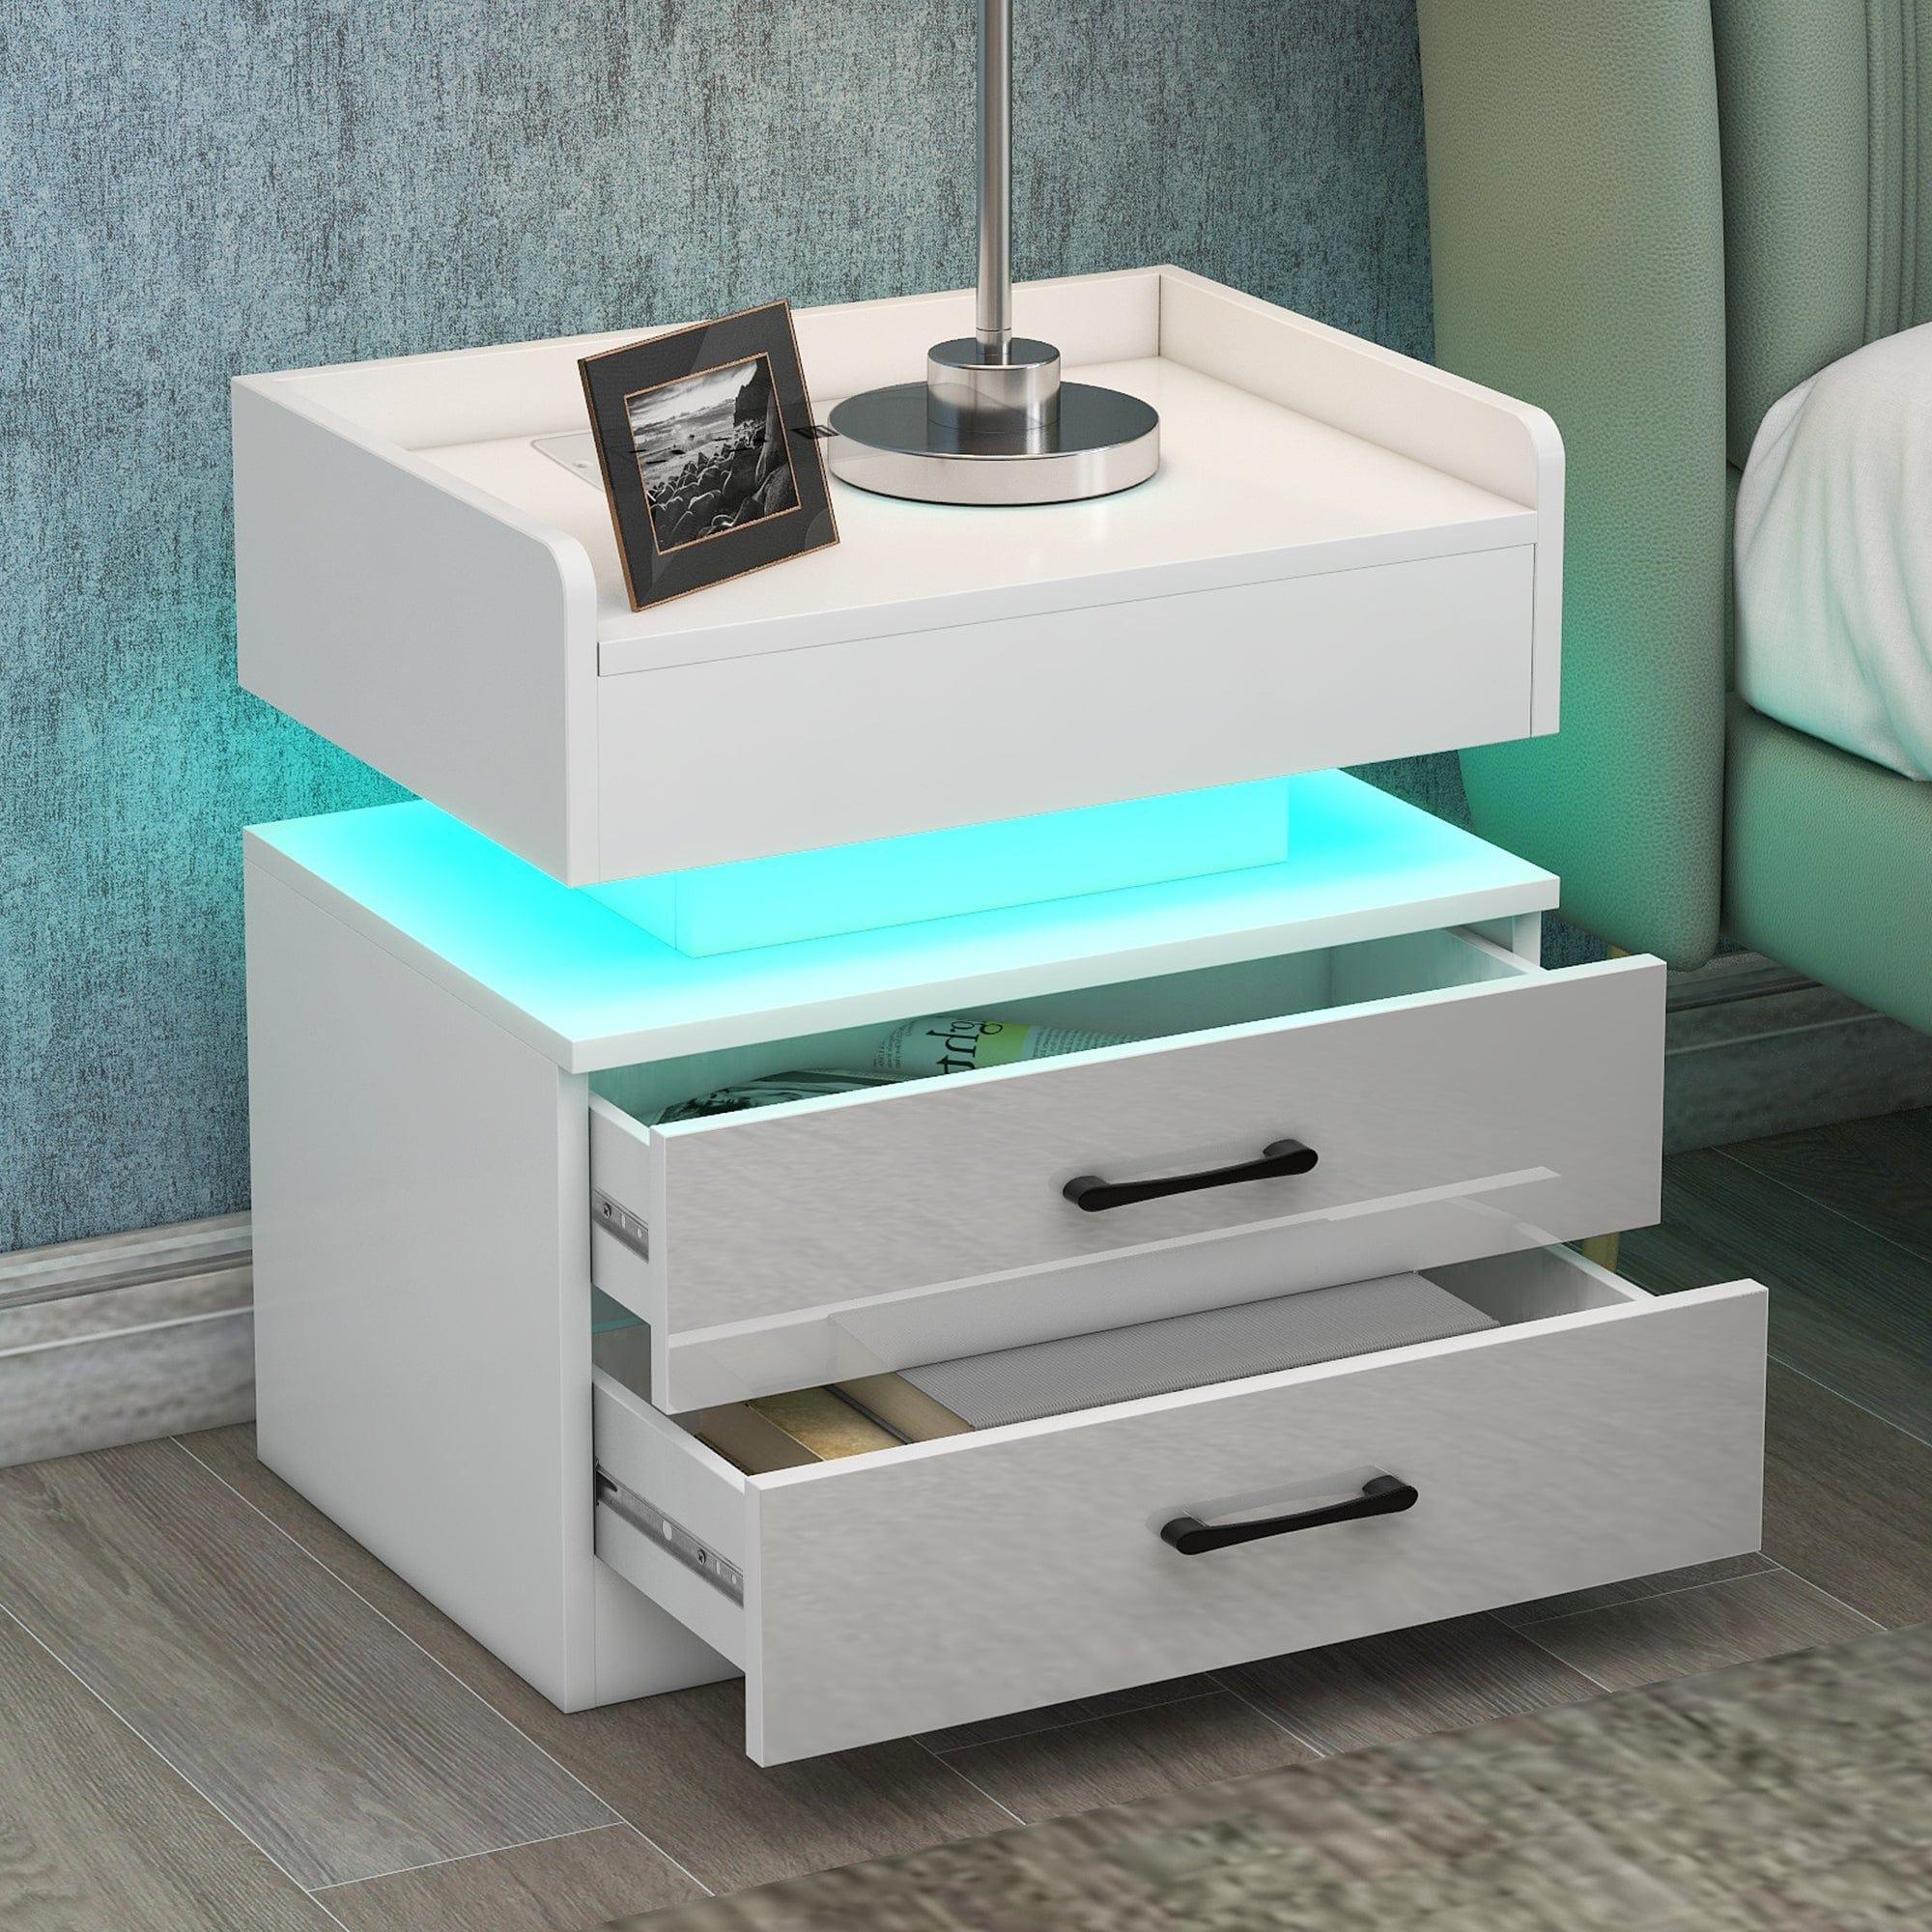 Shop Chamarel LED Smart Bedside Table Mademoiselle Home Decor